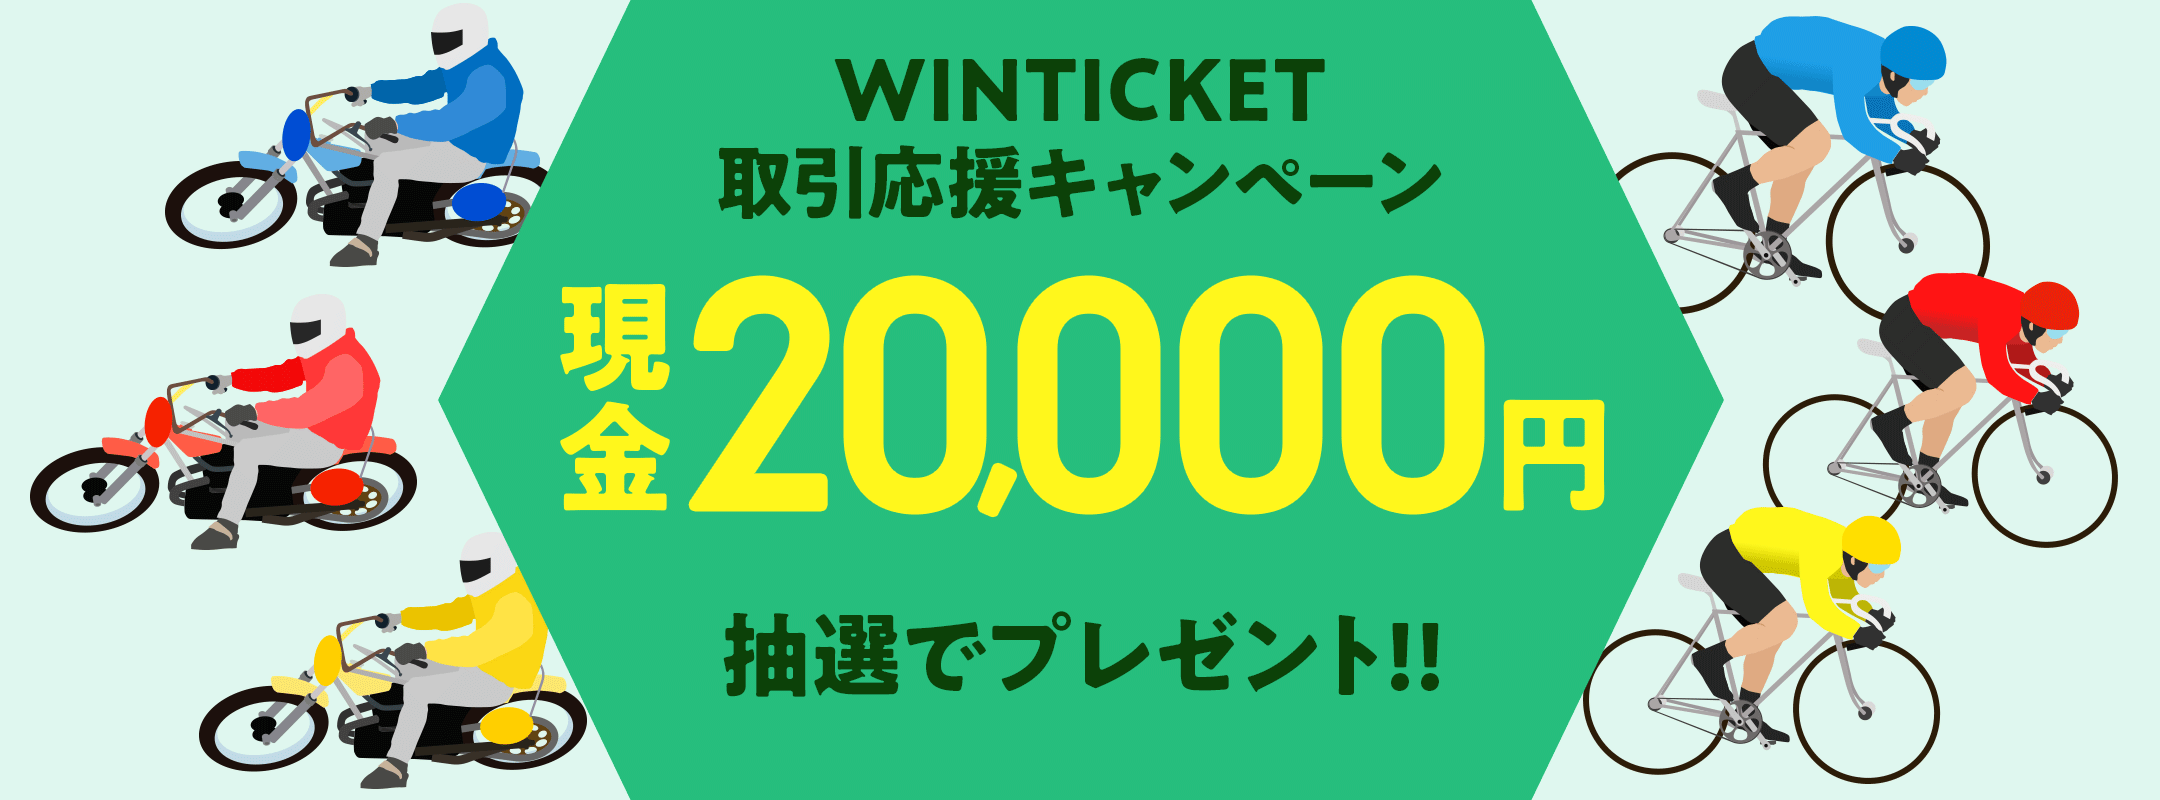 WINTICKET取引応援キャンペーン　現金20,000円抽選でプレゼント